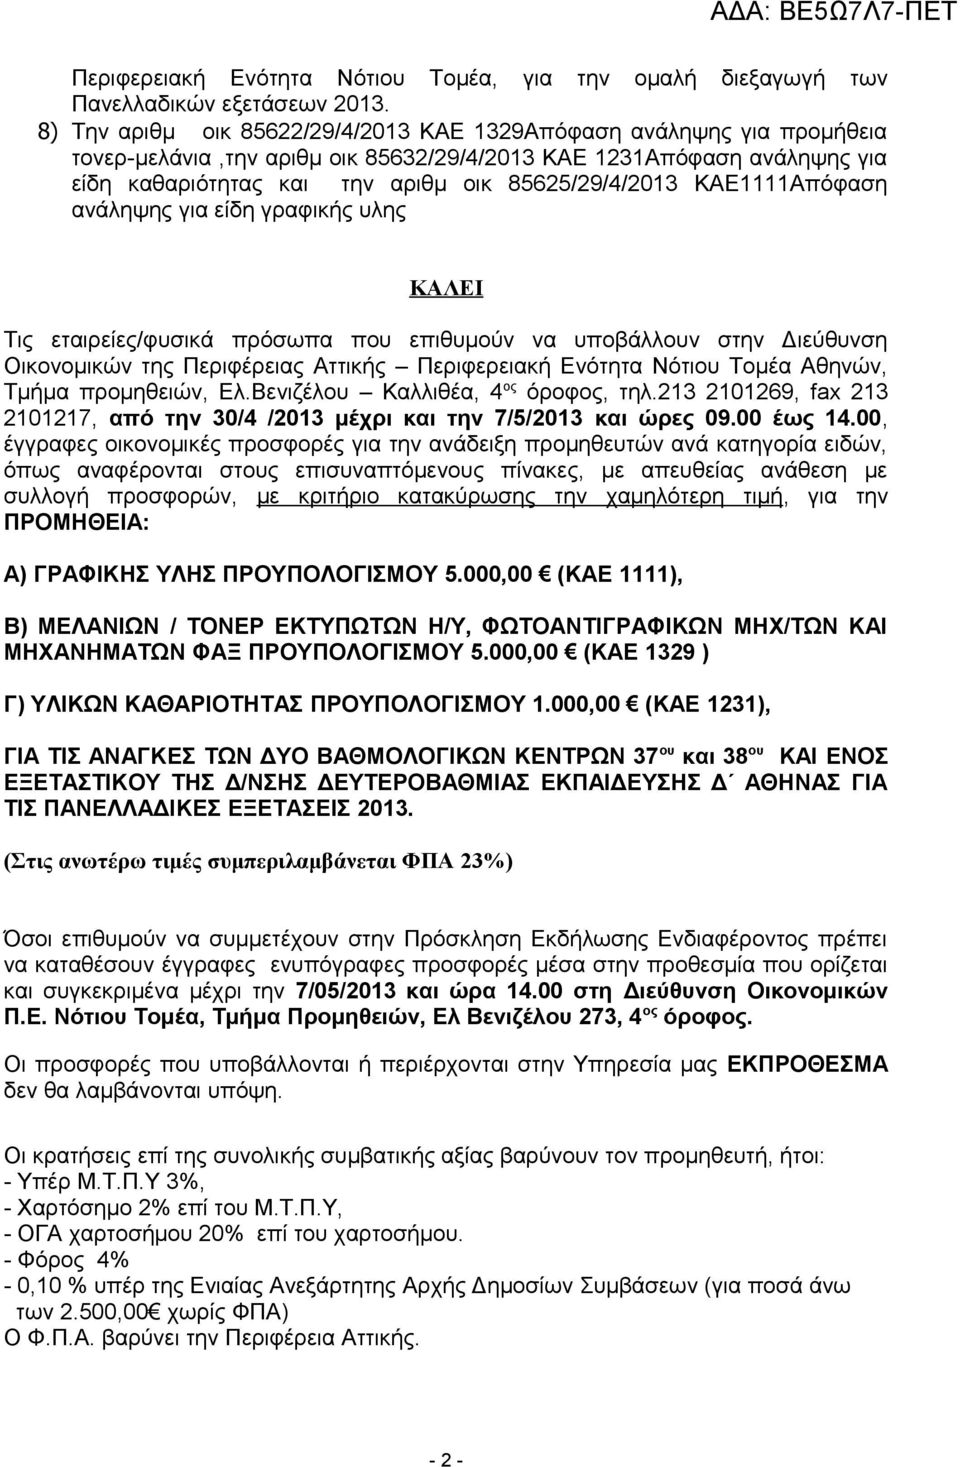 ΚΑΕ1111Απόφαση ανάληψης για είδη γραφικής υλης ΚΑΛΕΙ Τις εταιρείες/φυσικά πρόσωπα που επιθυμούν να υποβάλλουν στην Διεύθυνση Οικονομικών της Περιφέρειας Αττικής Περιφερειακή Ενότητα Νότιου Τομέα